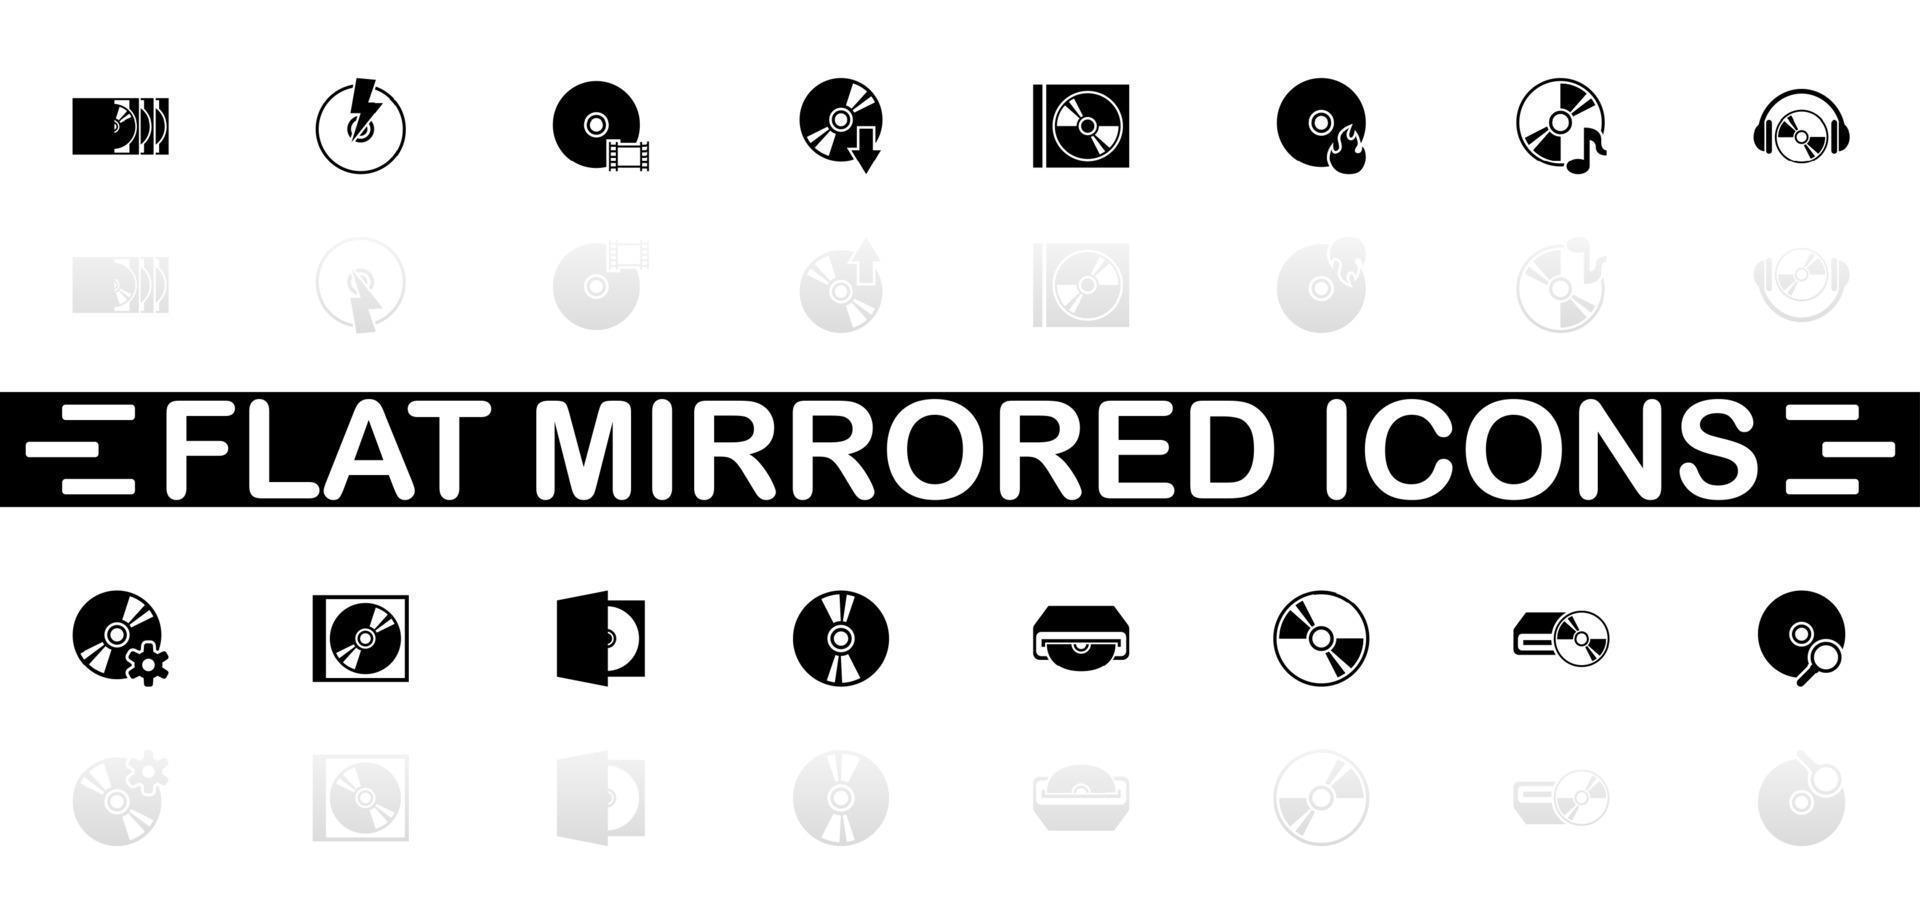 iconos de disco compacto - símbolo negro sobre fondo blanco. ilustración sencilla. icono de vector plano. sombra de reflejo de espejo. se puede utilizar en proyectos de logotipo, web, móvil y ui ux.